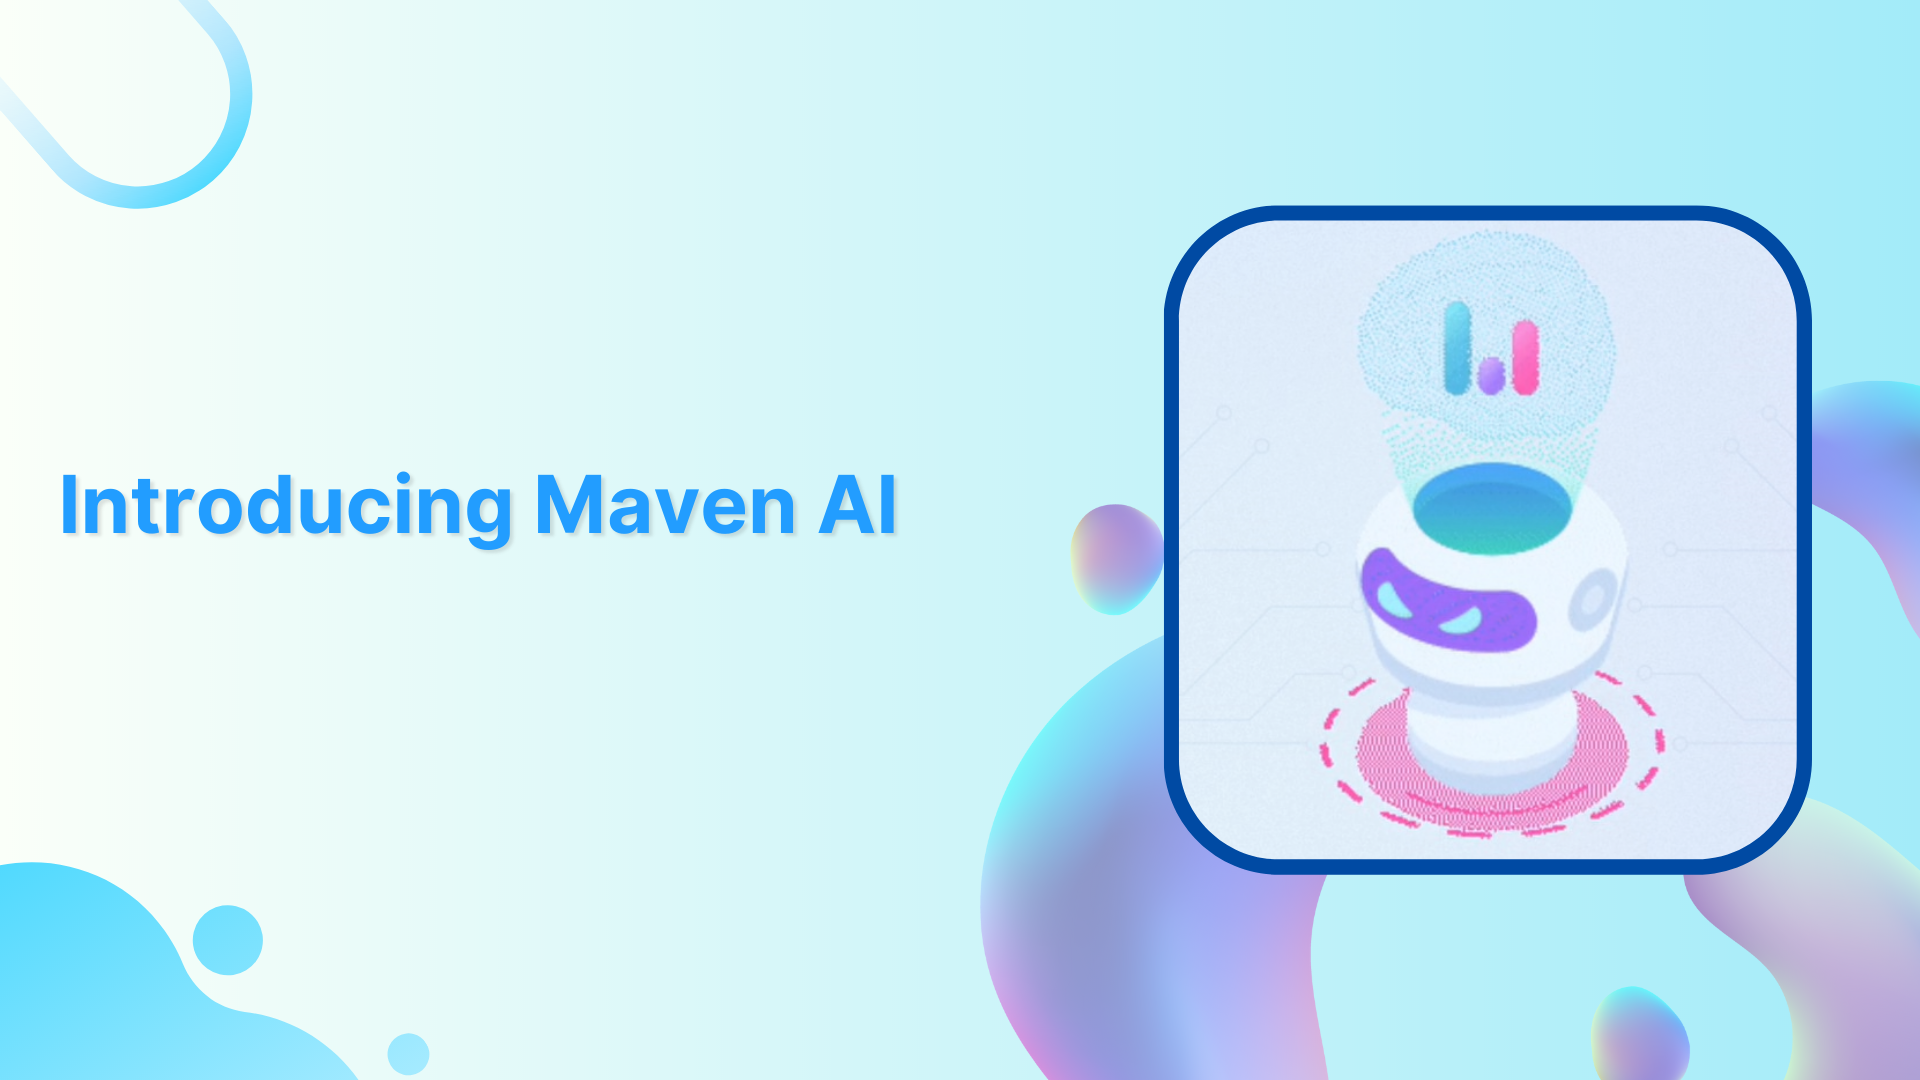 Usermaven's Maven AI